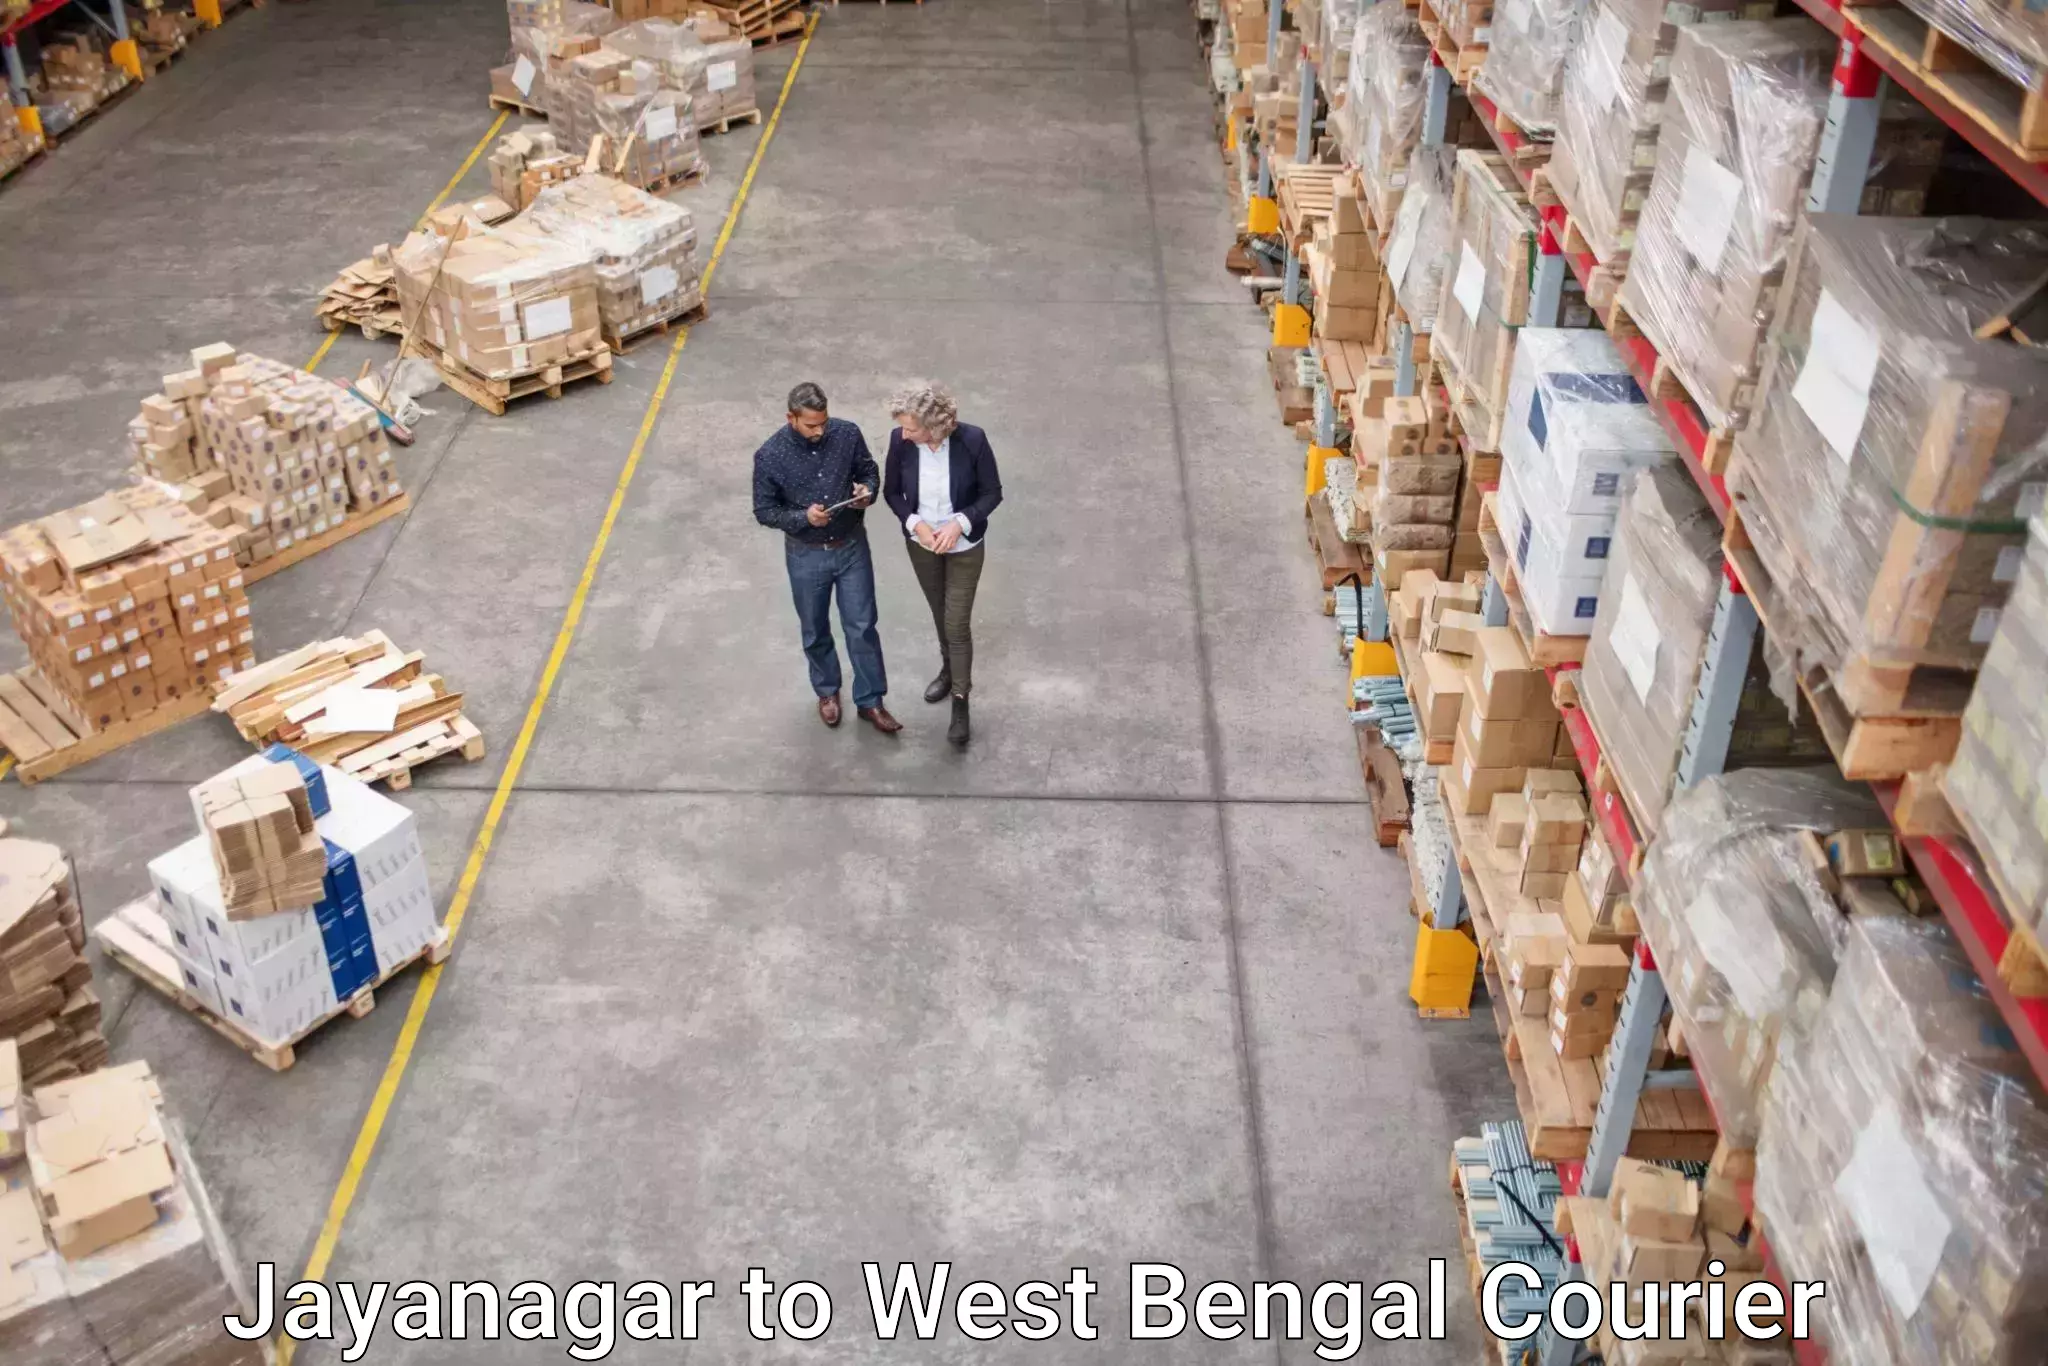 Global logistics network Jayanagar to Tollygunge